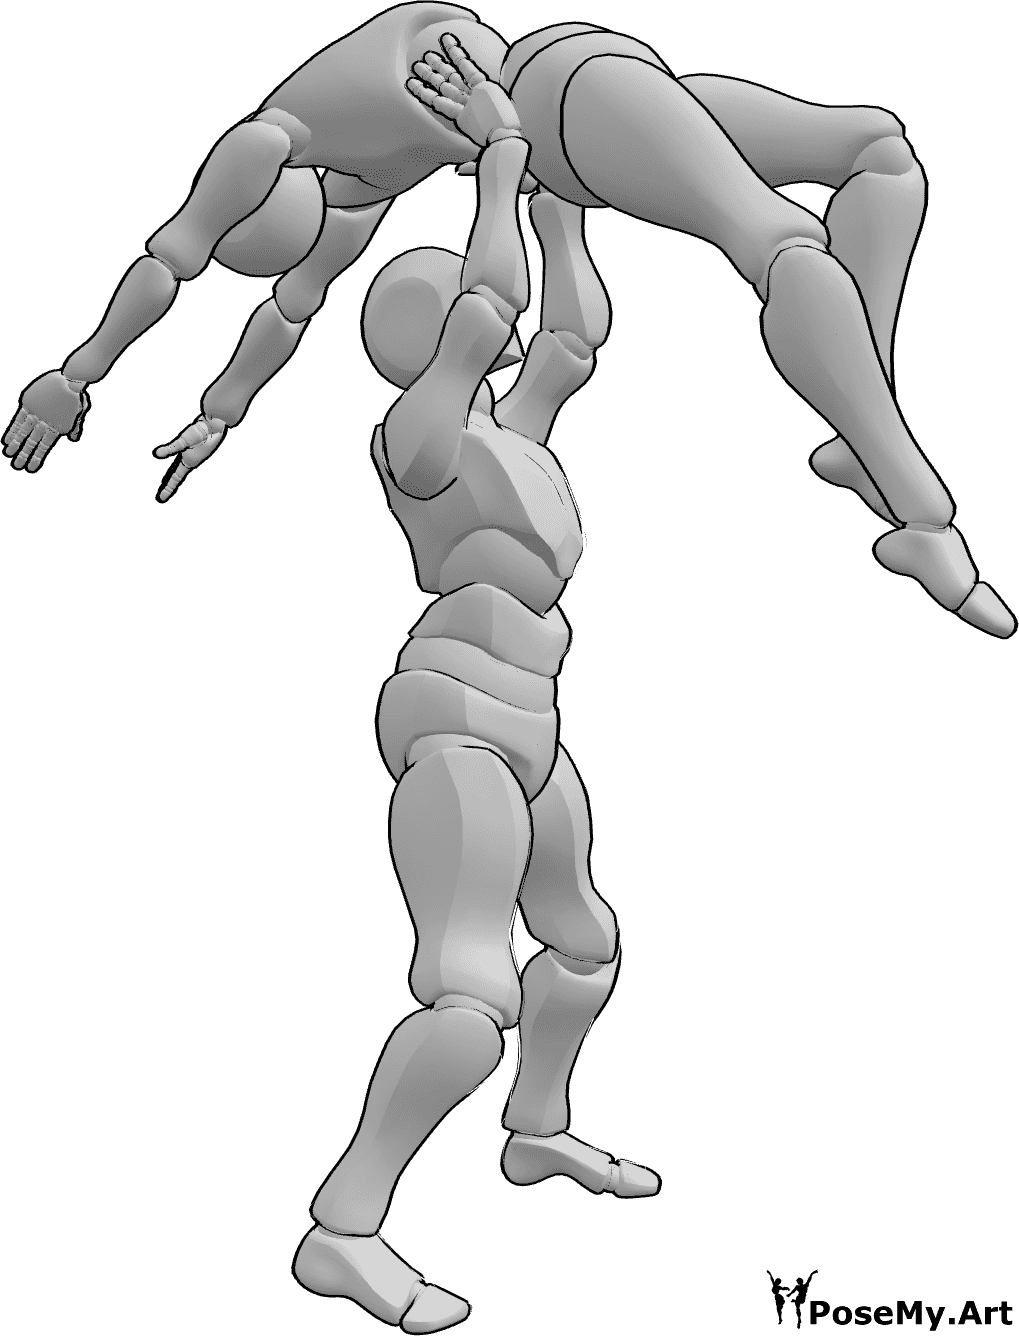 Referência de poses- Homem levanta pose de mulher - O macho levanta a fêmea acima da sua cabeça em pose